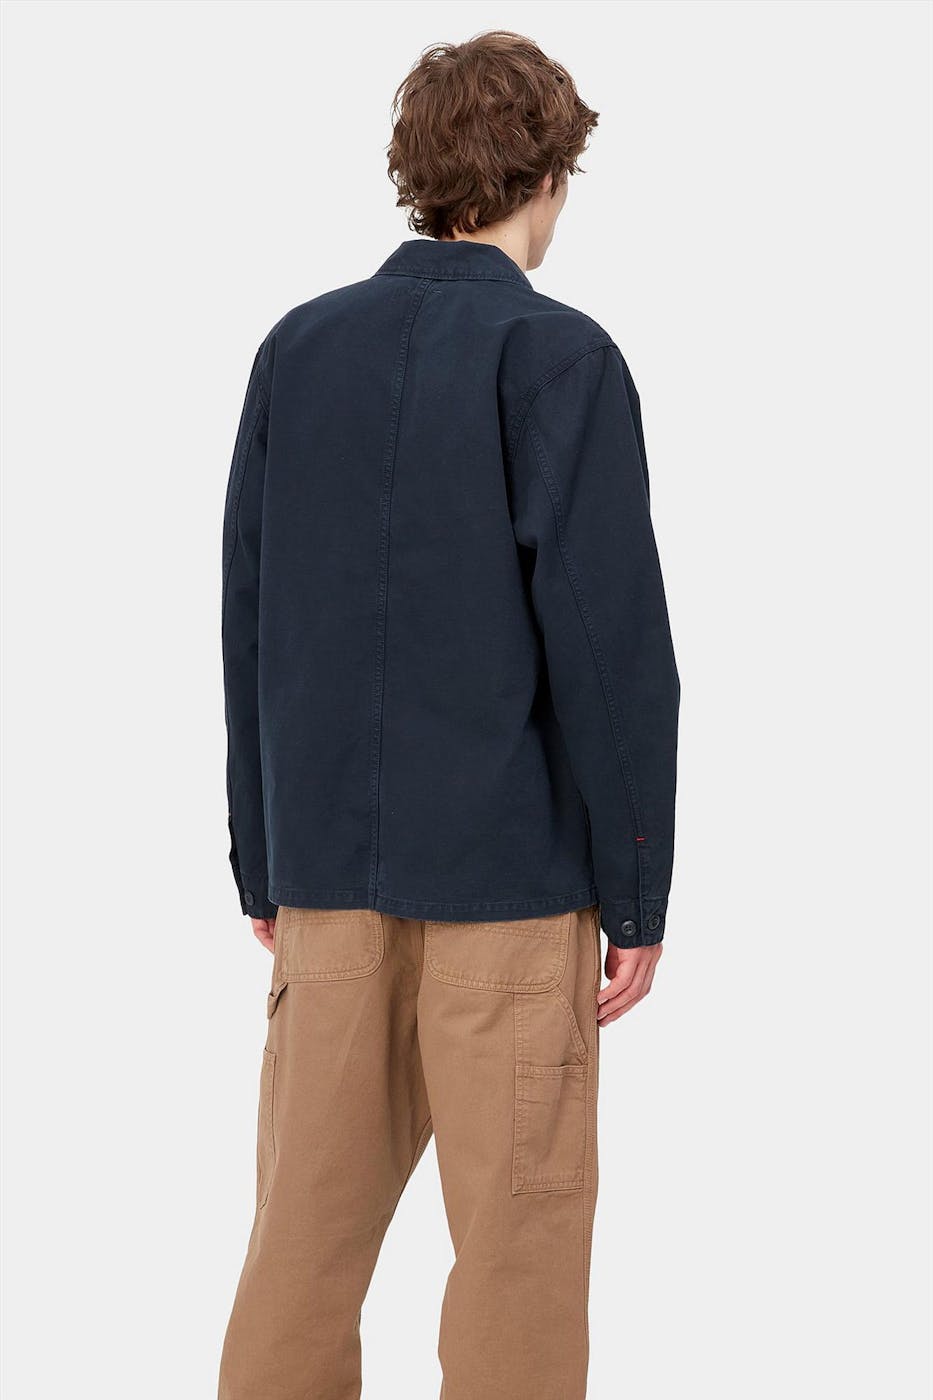 Carhartt WIP - Donkerblauwe Wesley jas